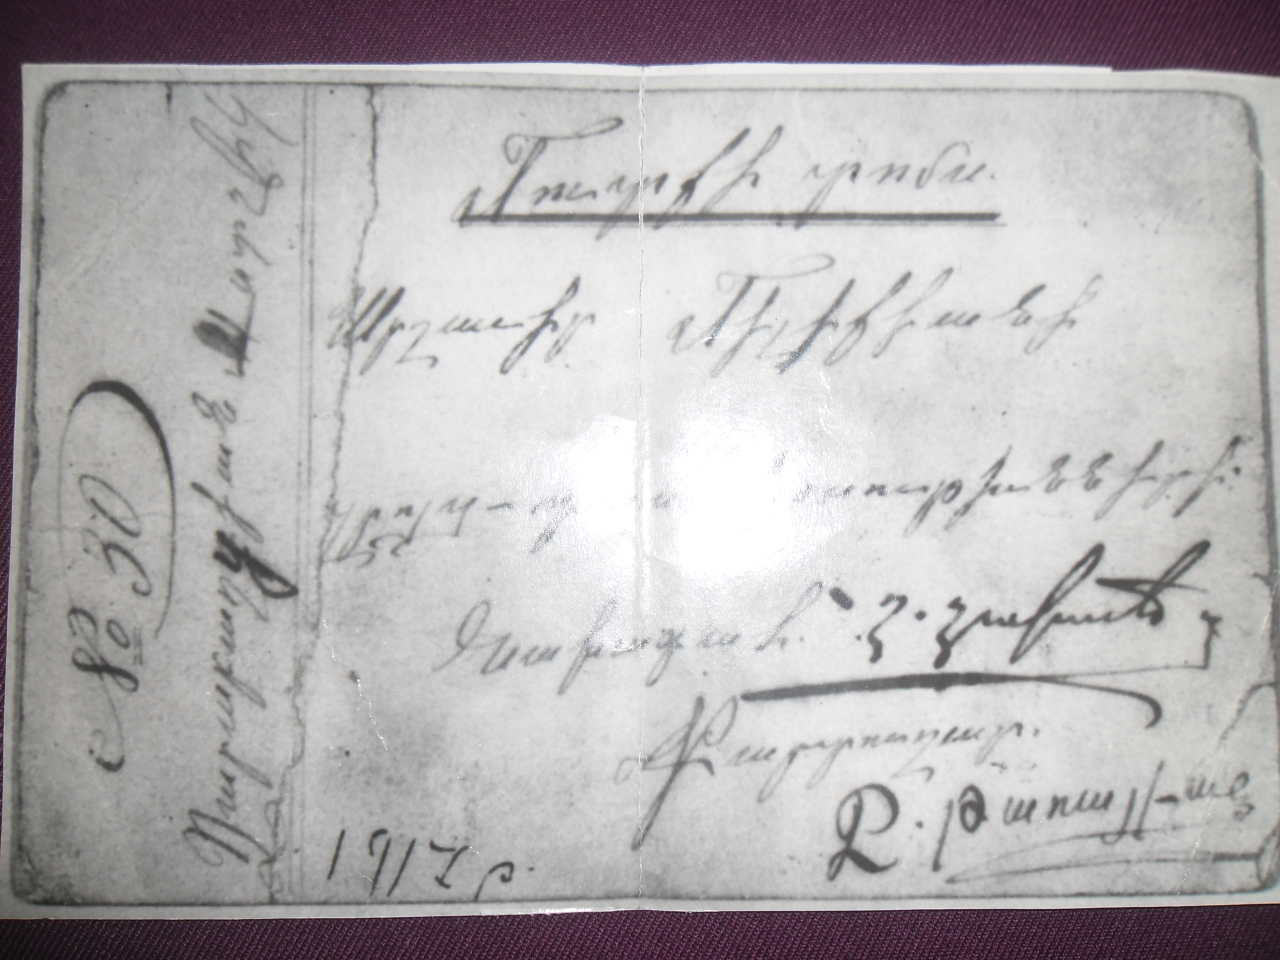 Մուտքի  տոմս՝ Աստղիկ Մկրտիչի Ղարաբաղցյանին (1920 թ.Նոր Բայազետի Մայիսյան ապստամբության մասնակից)